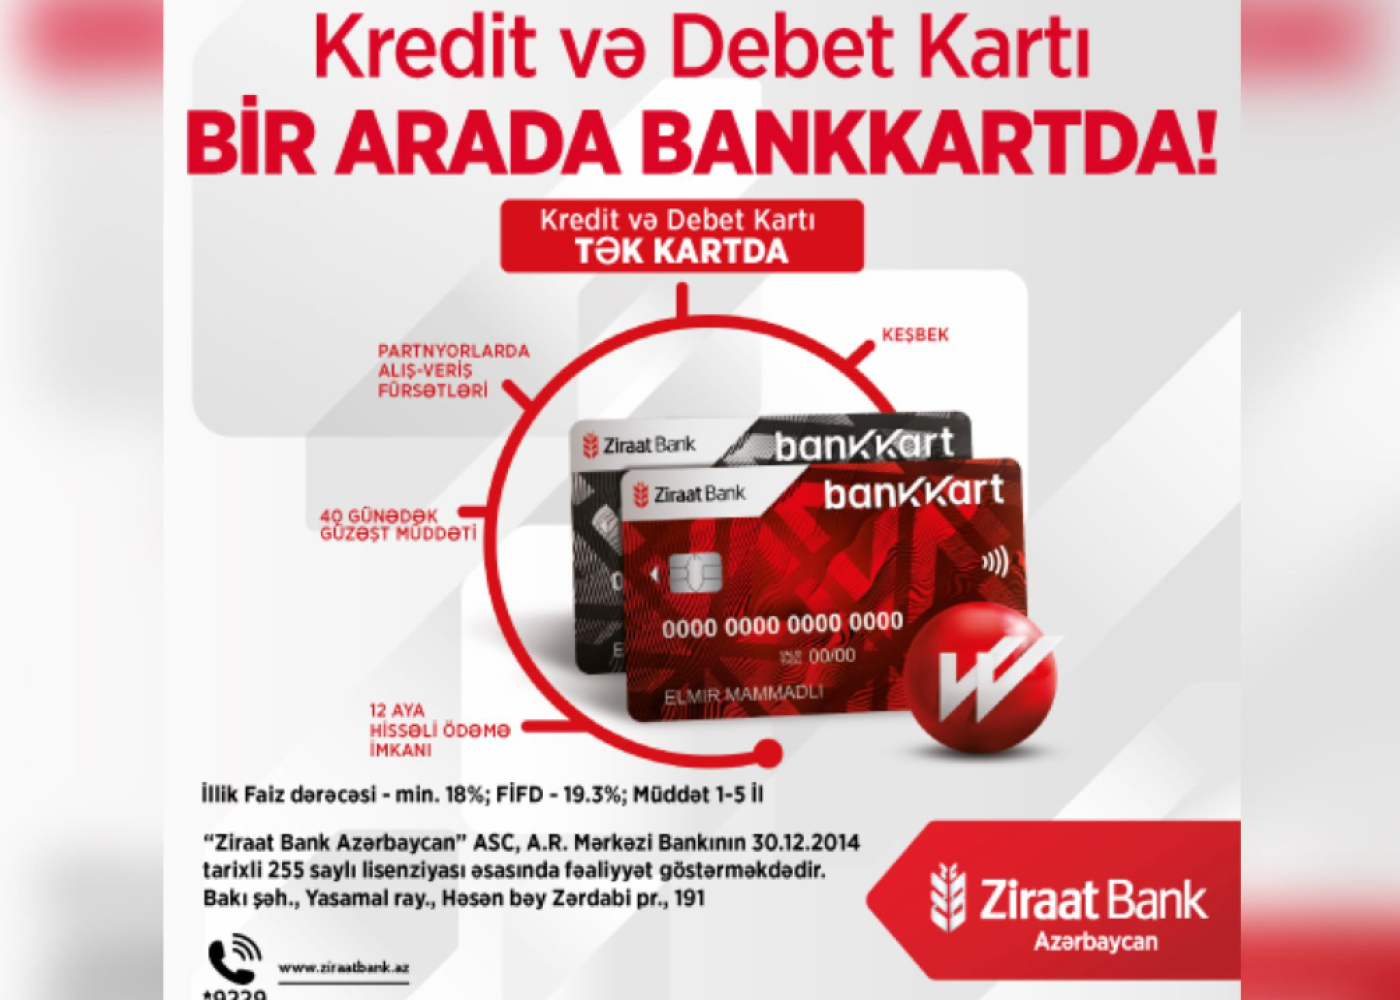 "Ziraat Bank Azərbaycan" Bankkart ilə kredit və debet kartlarınıtək kartda birləşdirdi! - VİDEO